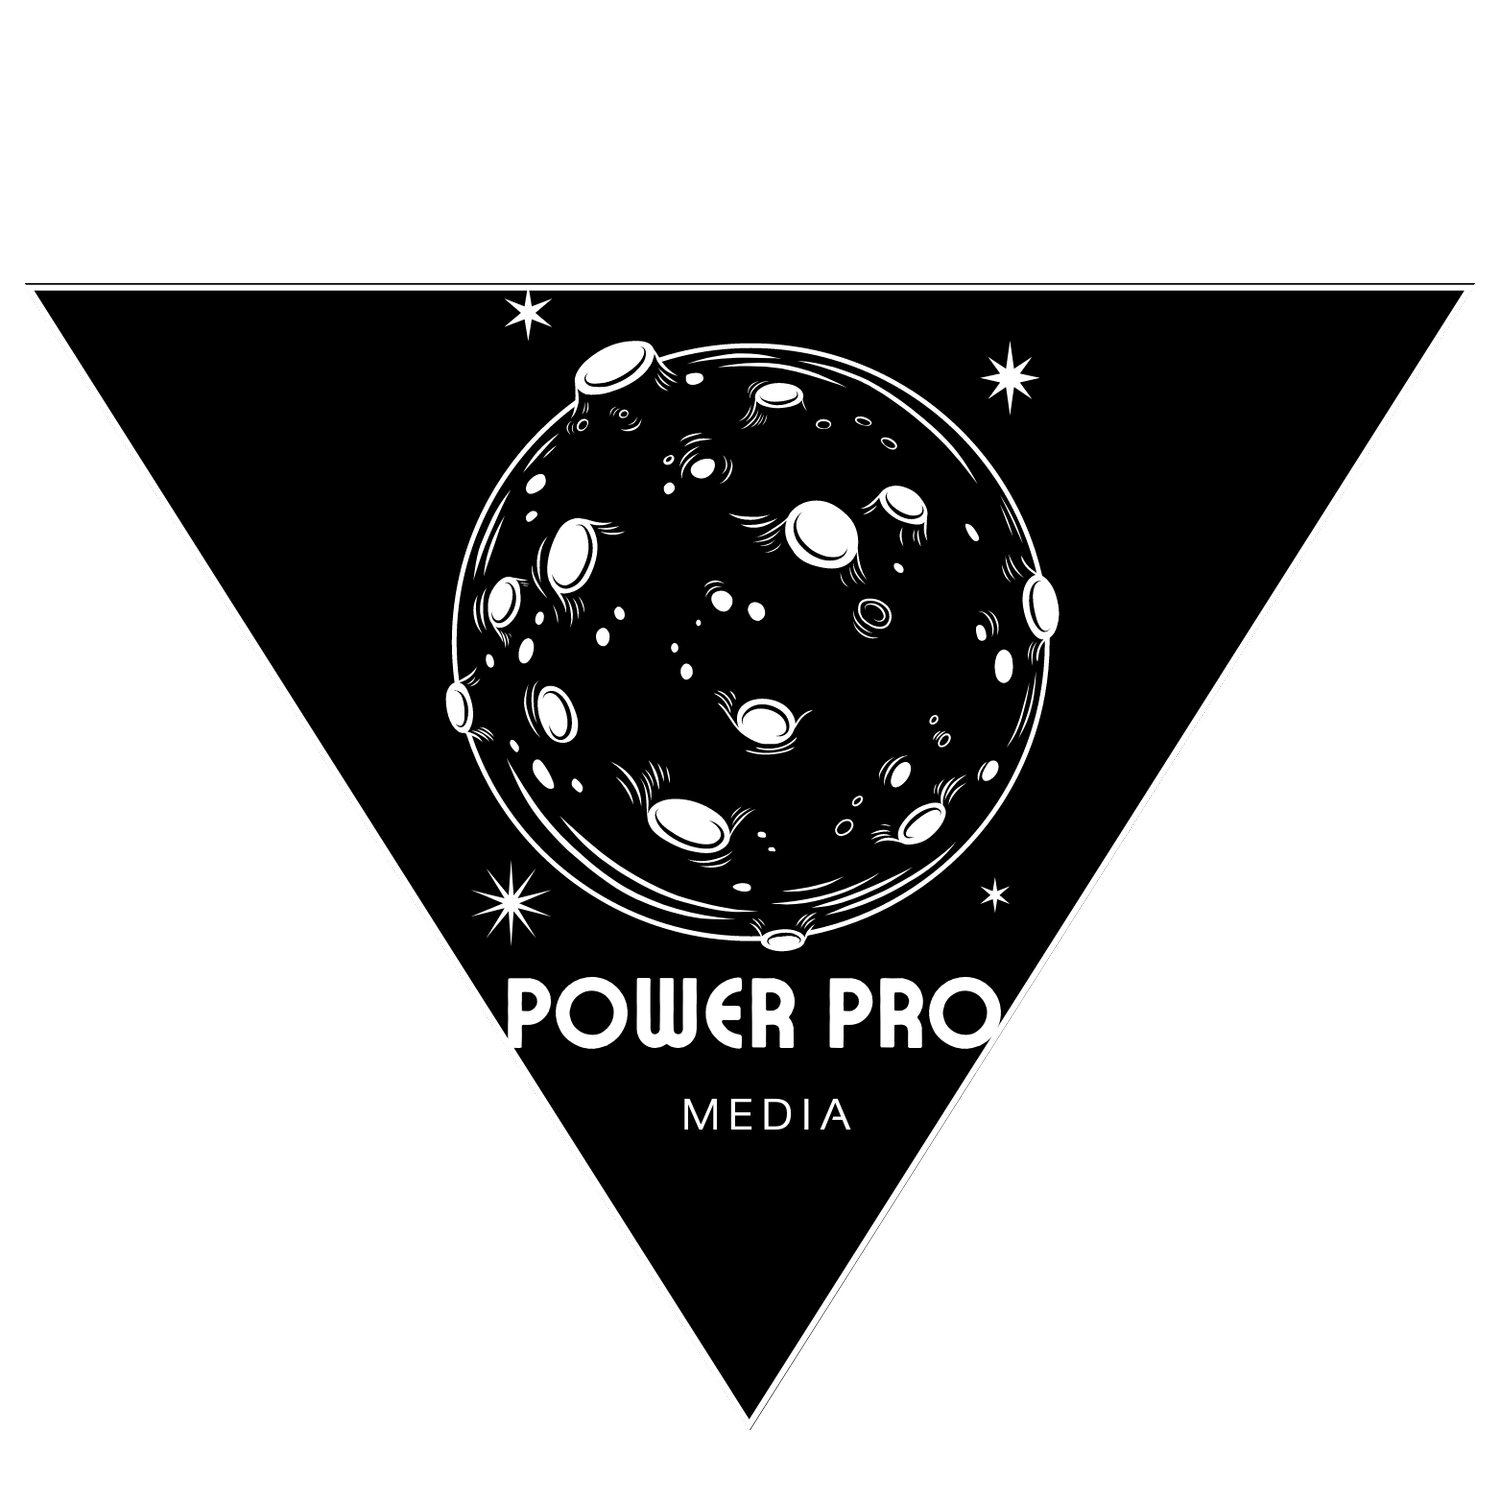 POWER PRO MEDIA